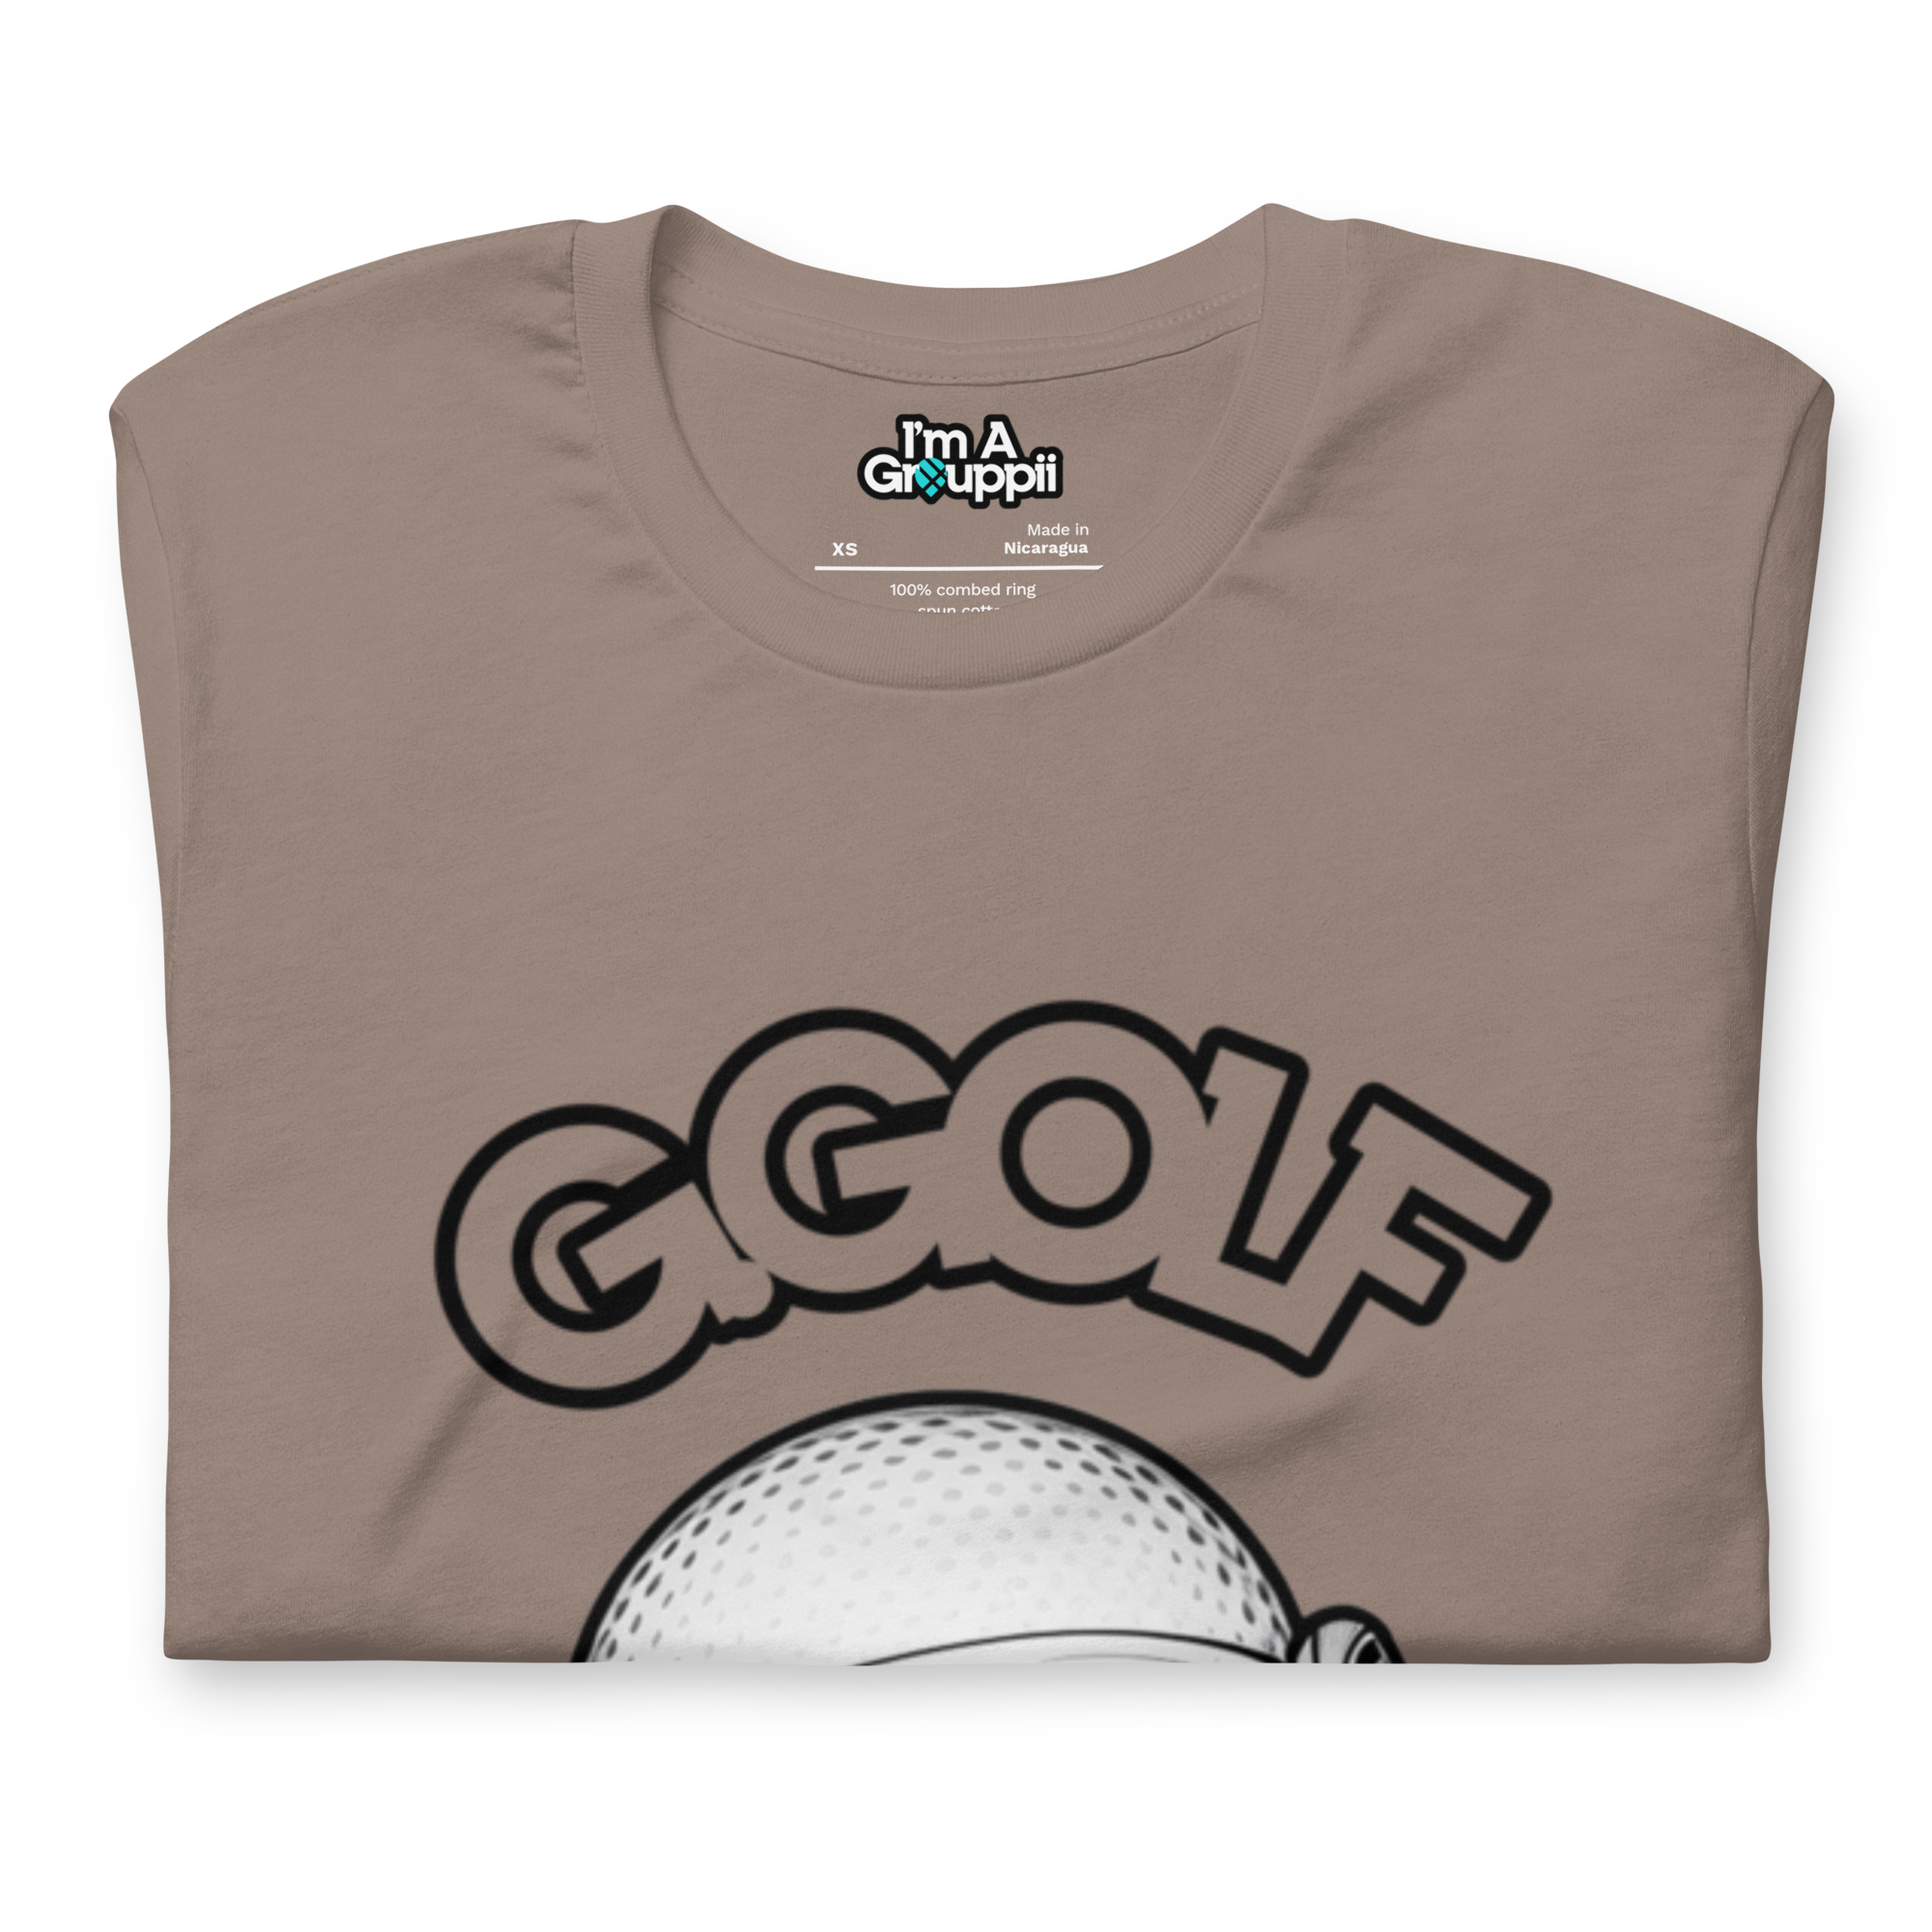 Mr. G.Golf Ball Tee